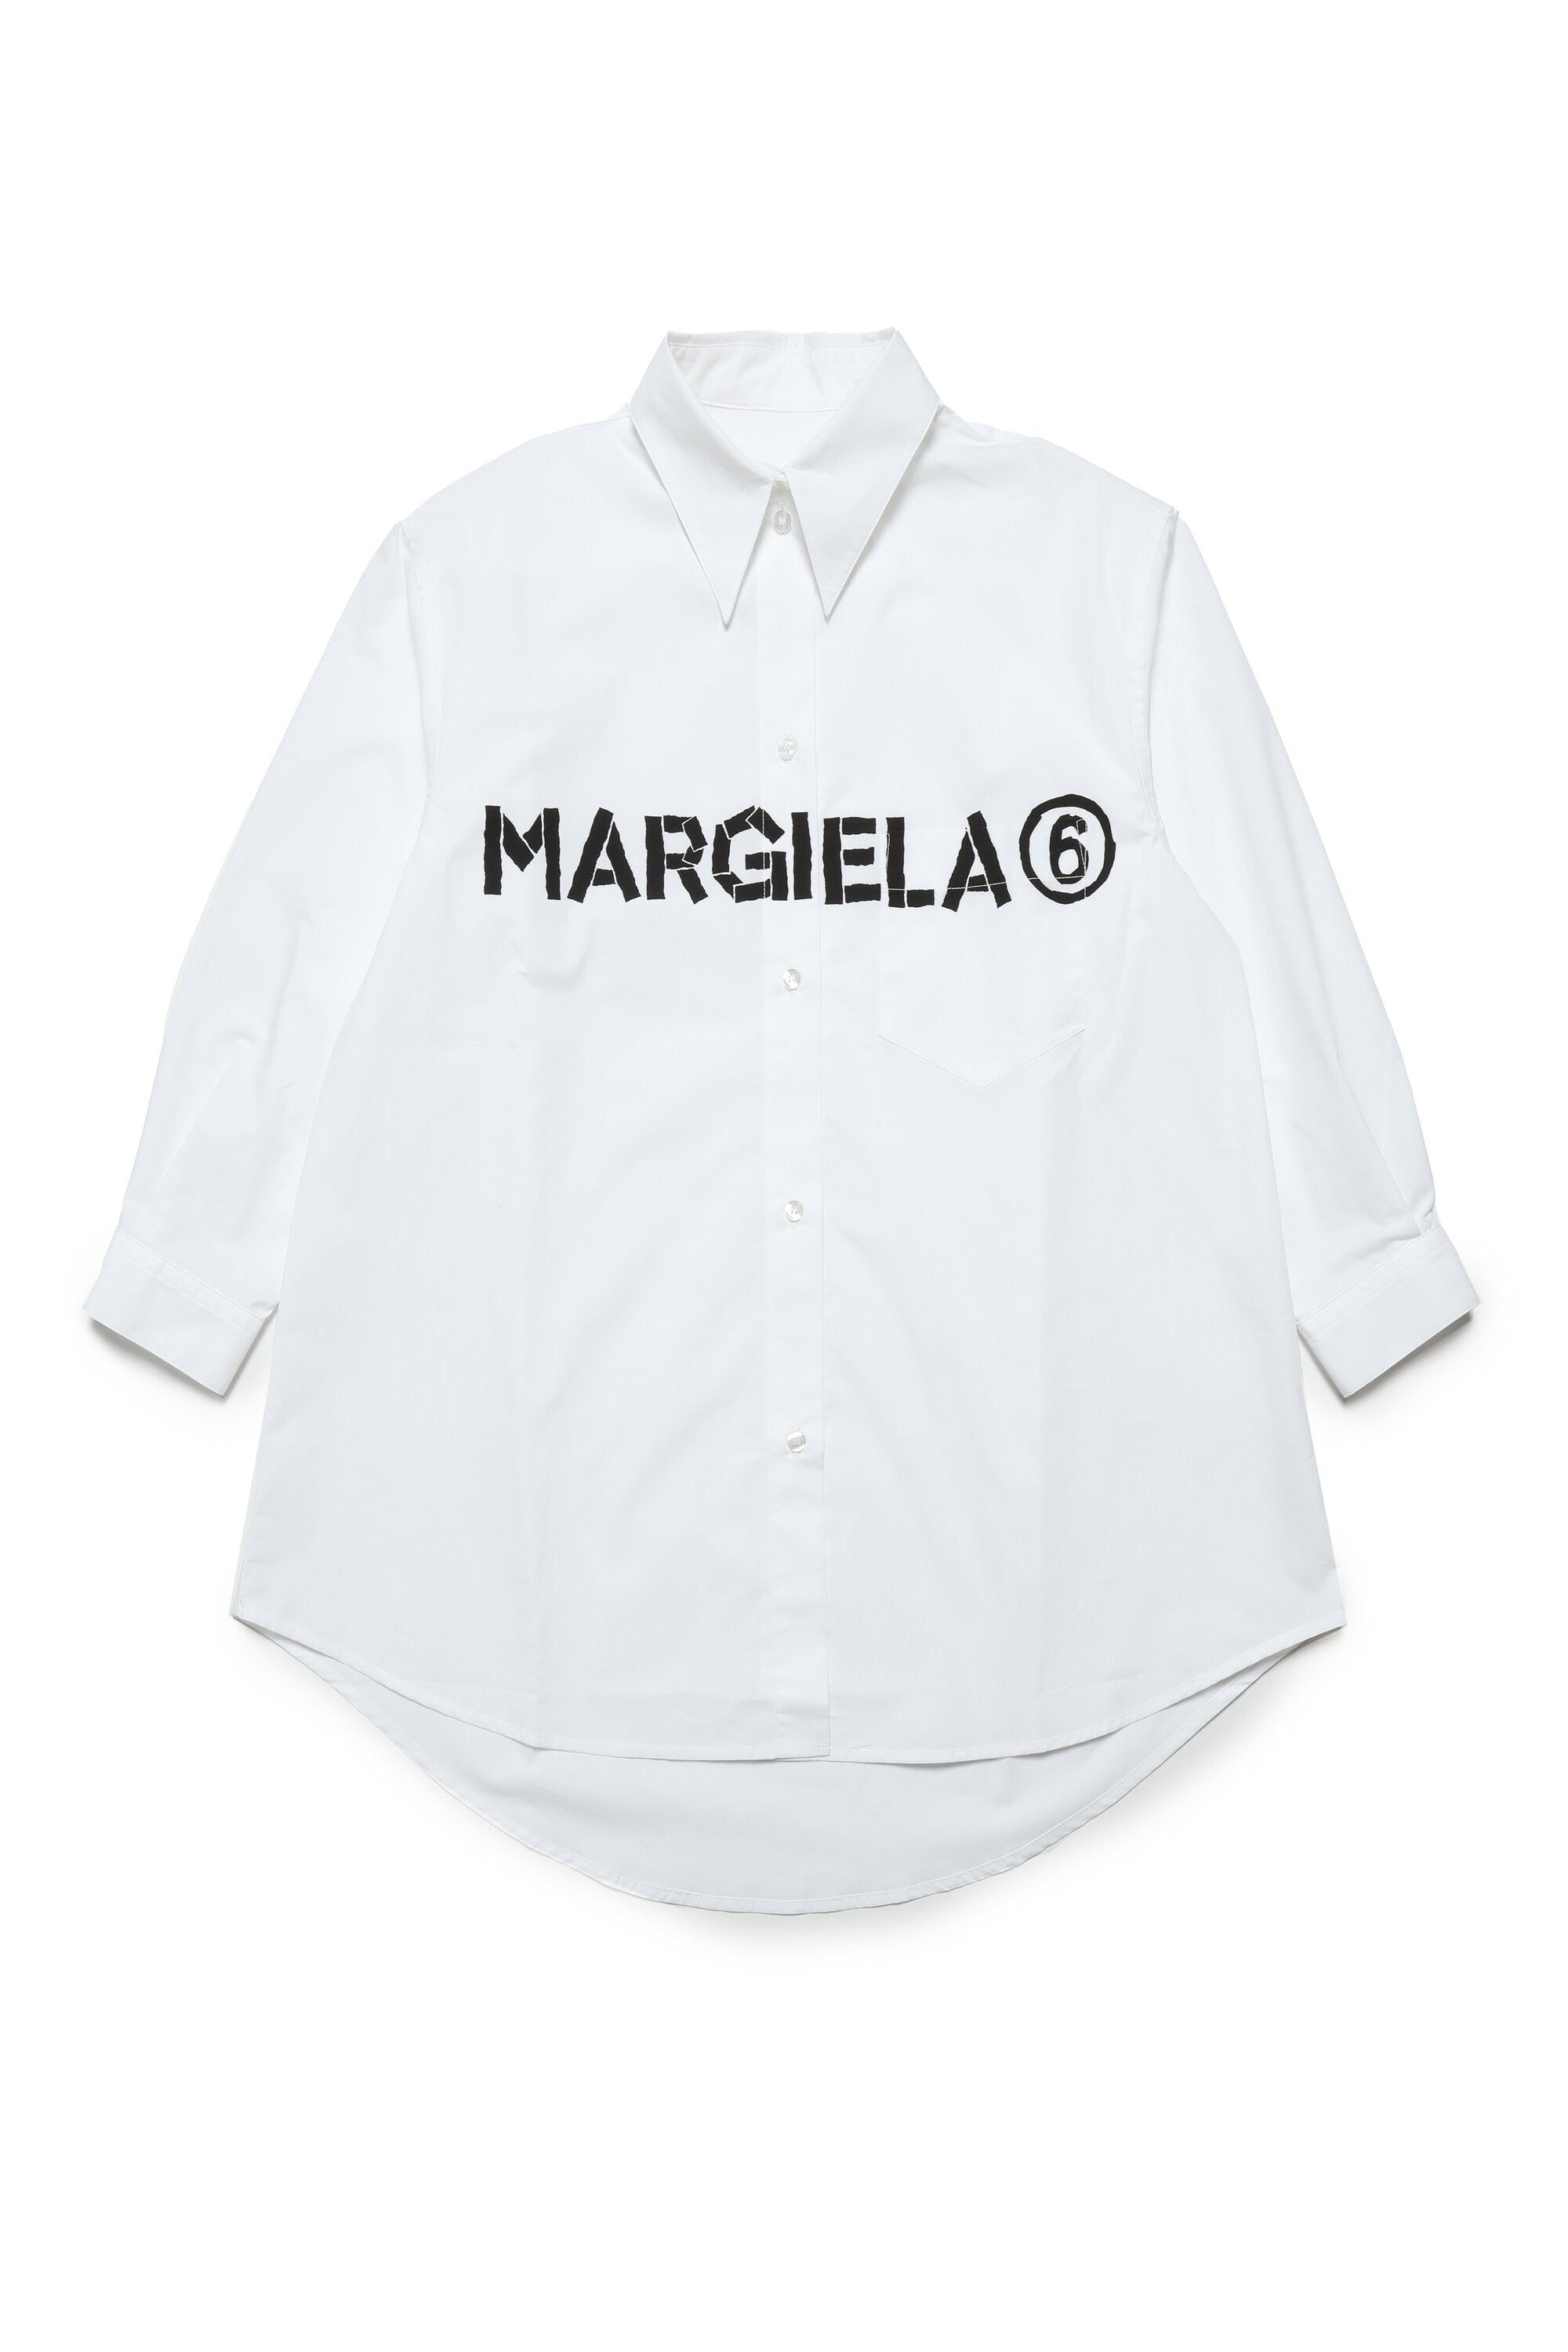 MM6 MAISON MARGIELA ポプリン シャツドレス